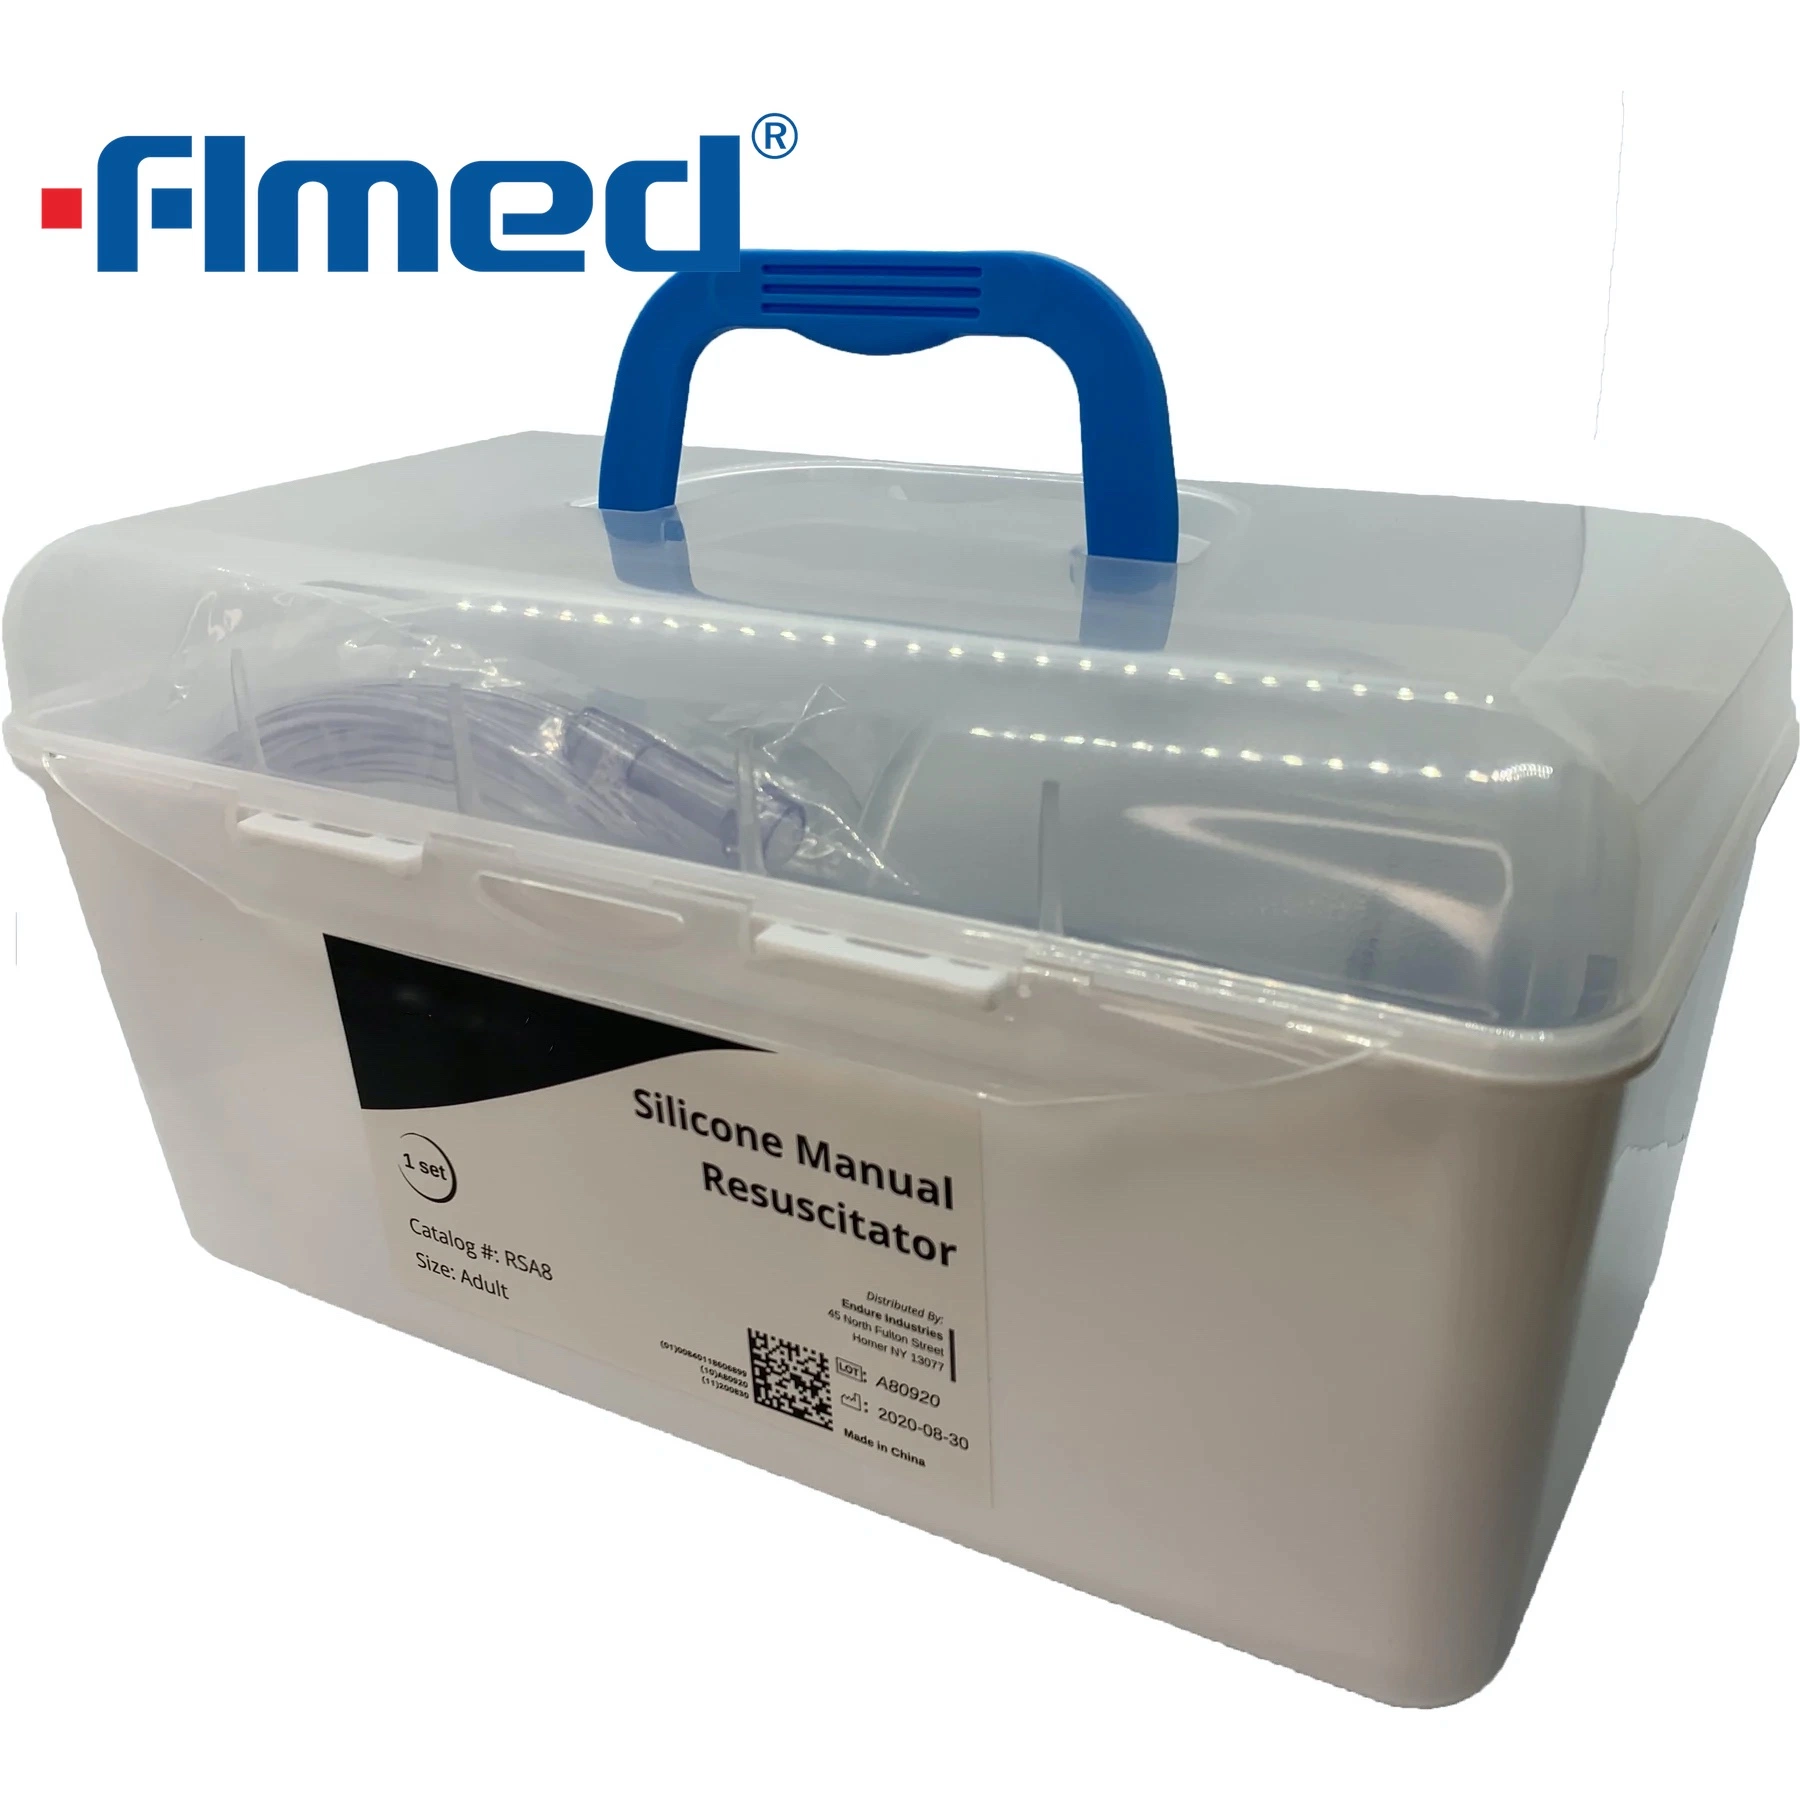 China Wholesale/Supplier Medical Supply Medical silicone Manual Resuscitador sacos Ambu